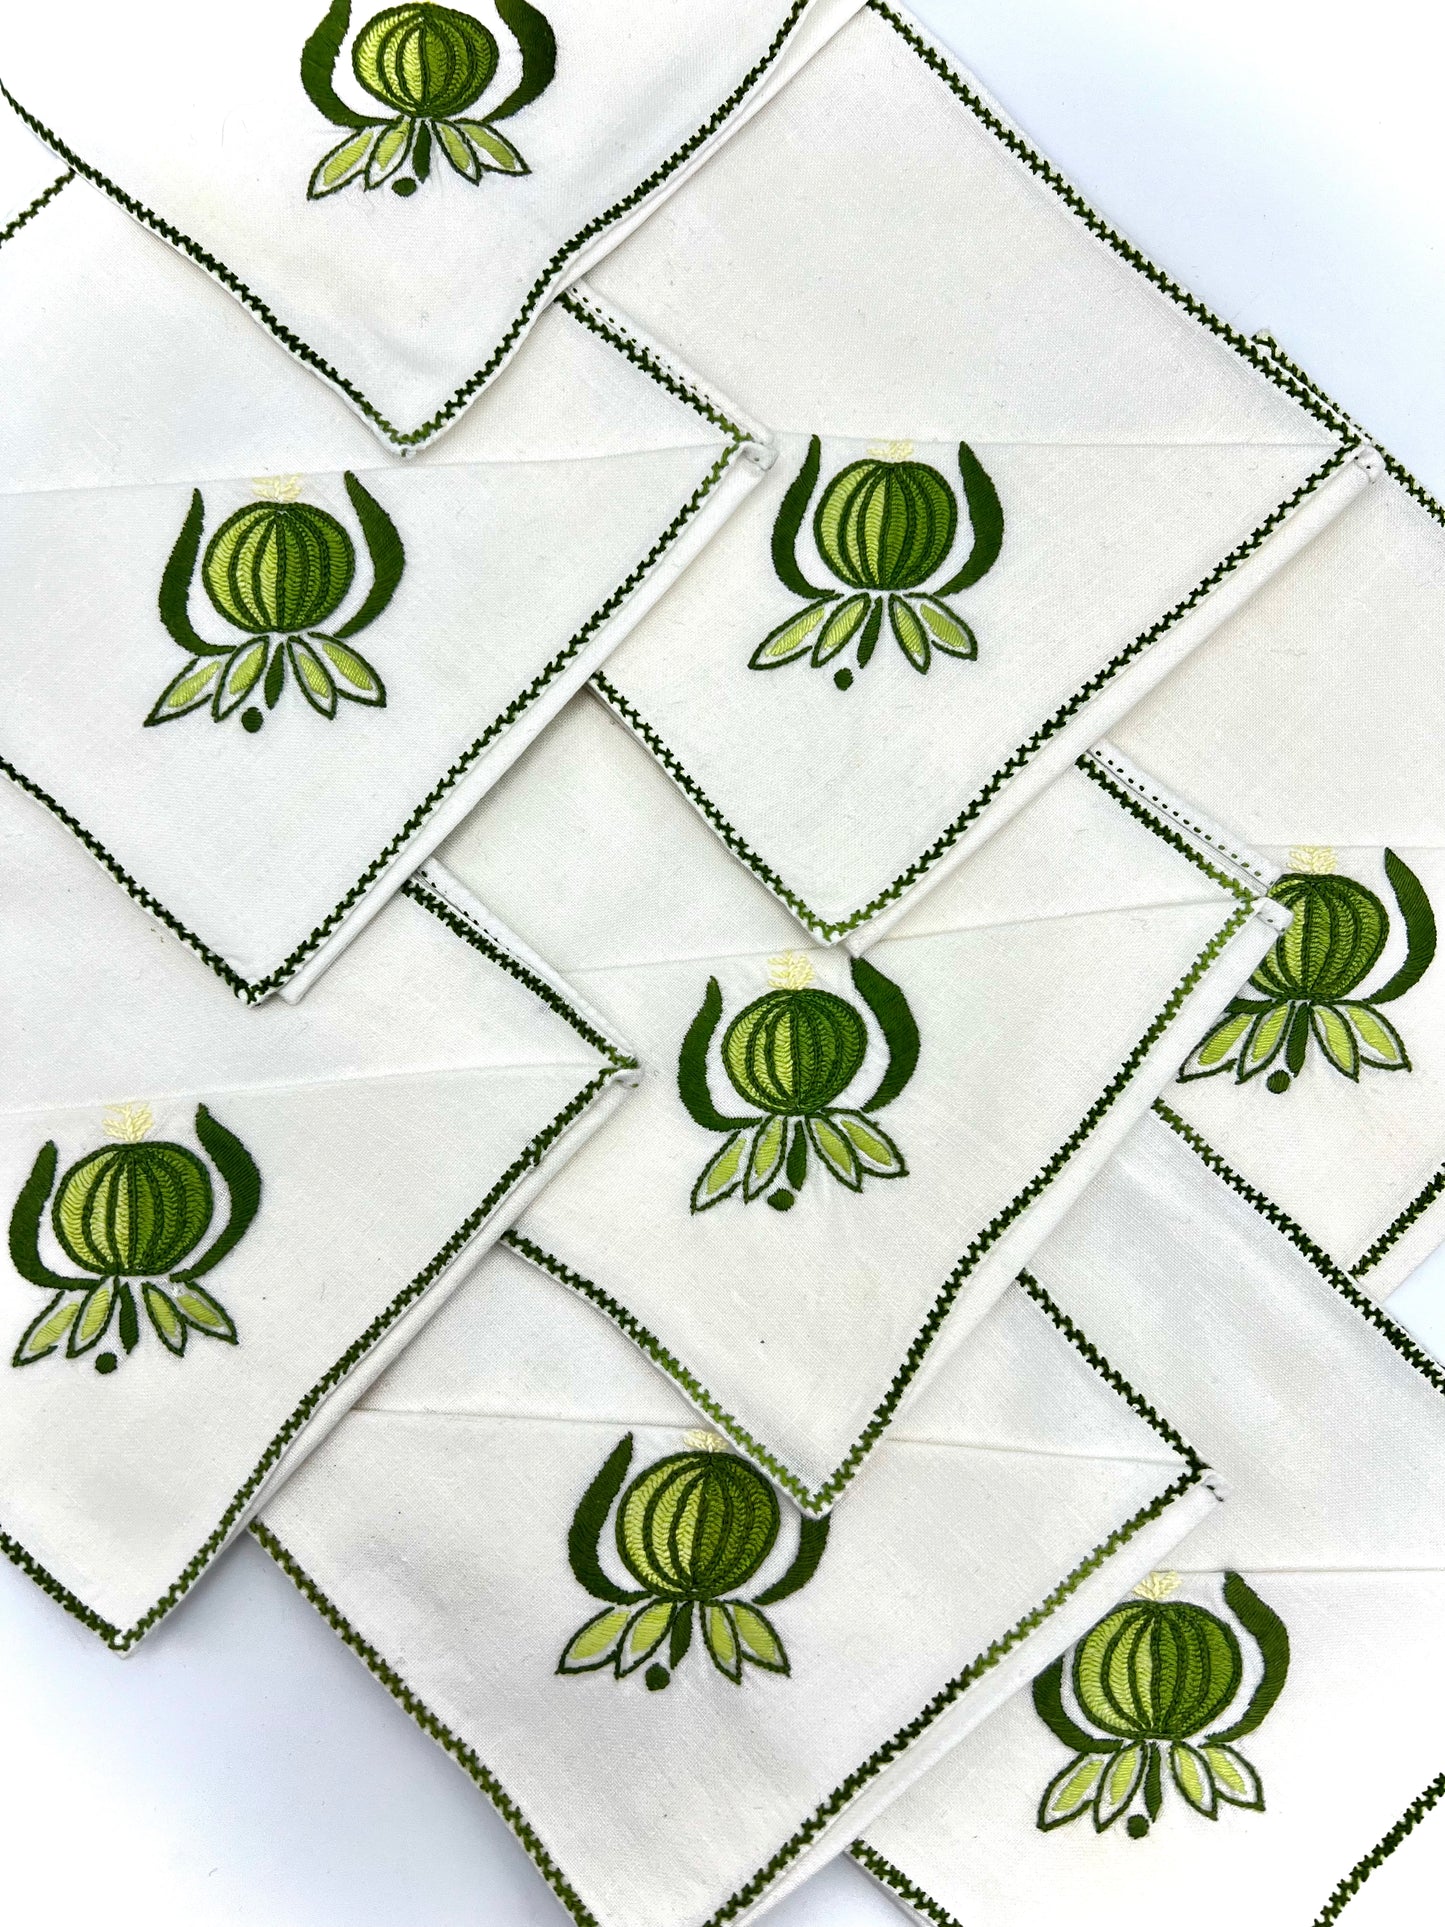 Vintage Hand-Embroidered Napkin Set of 8